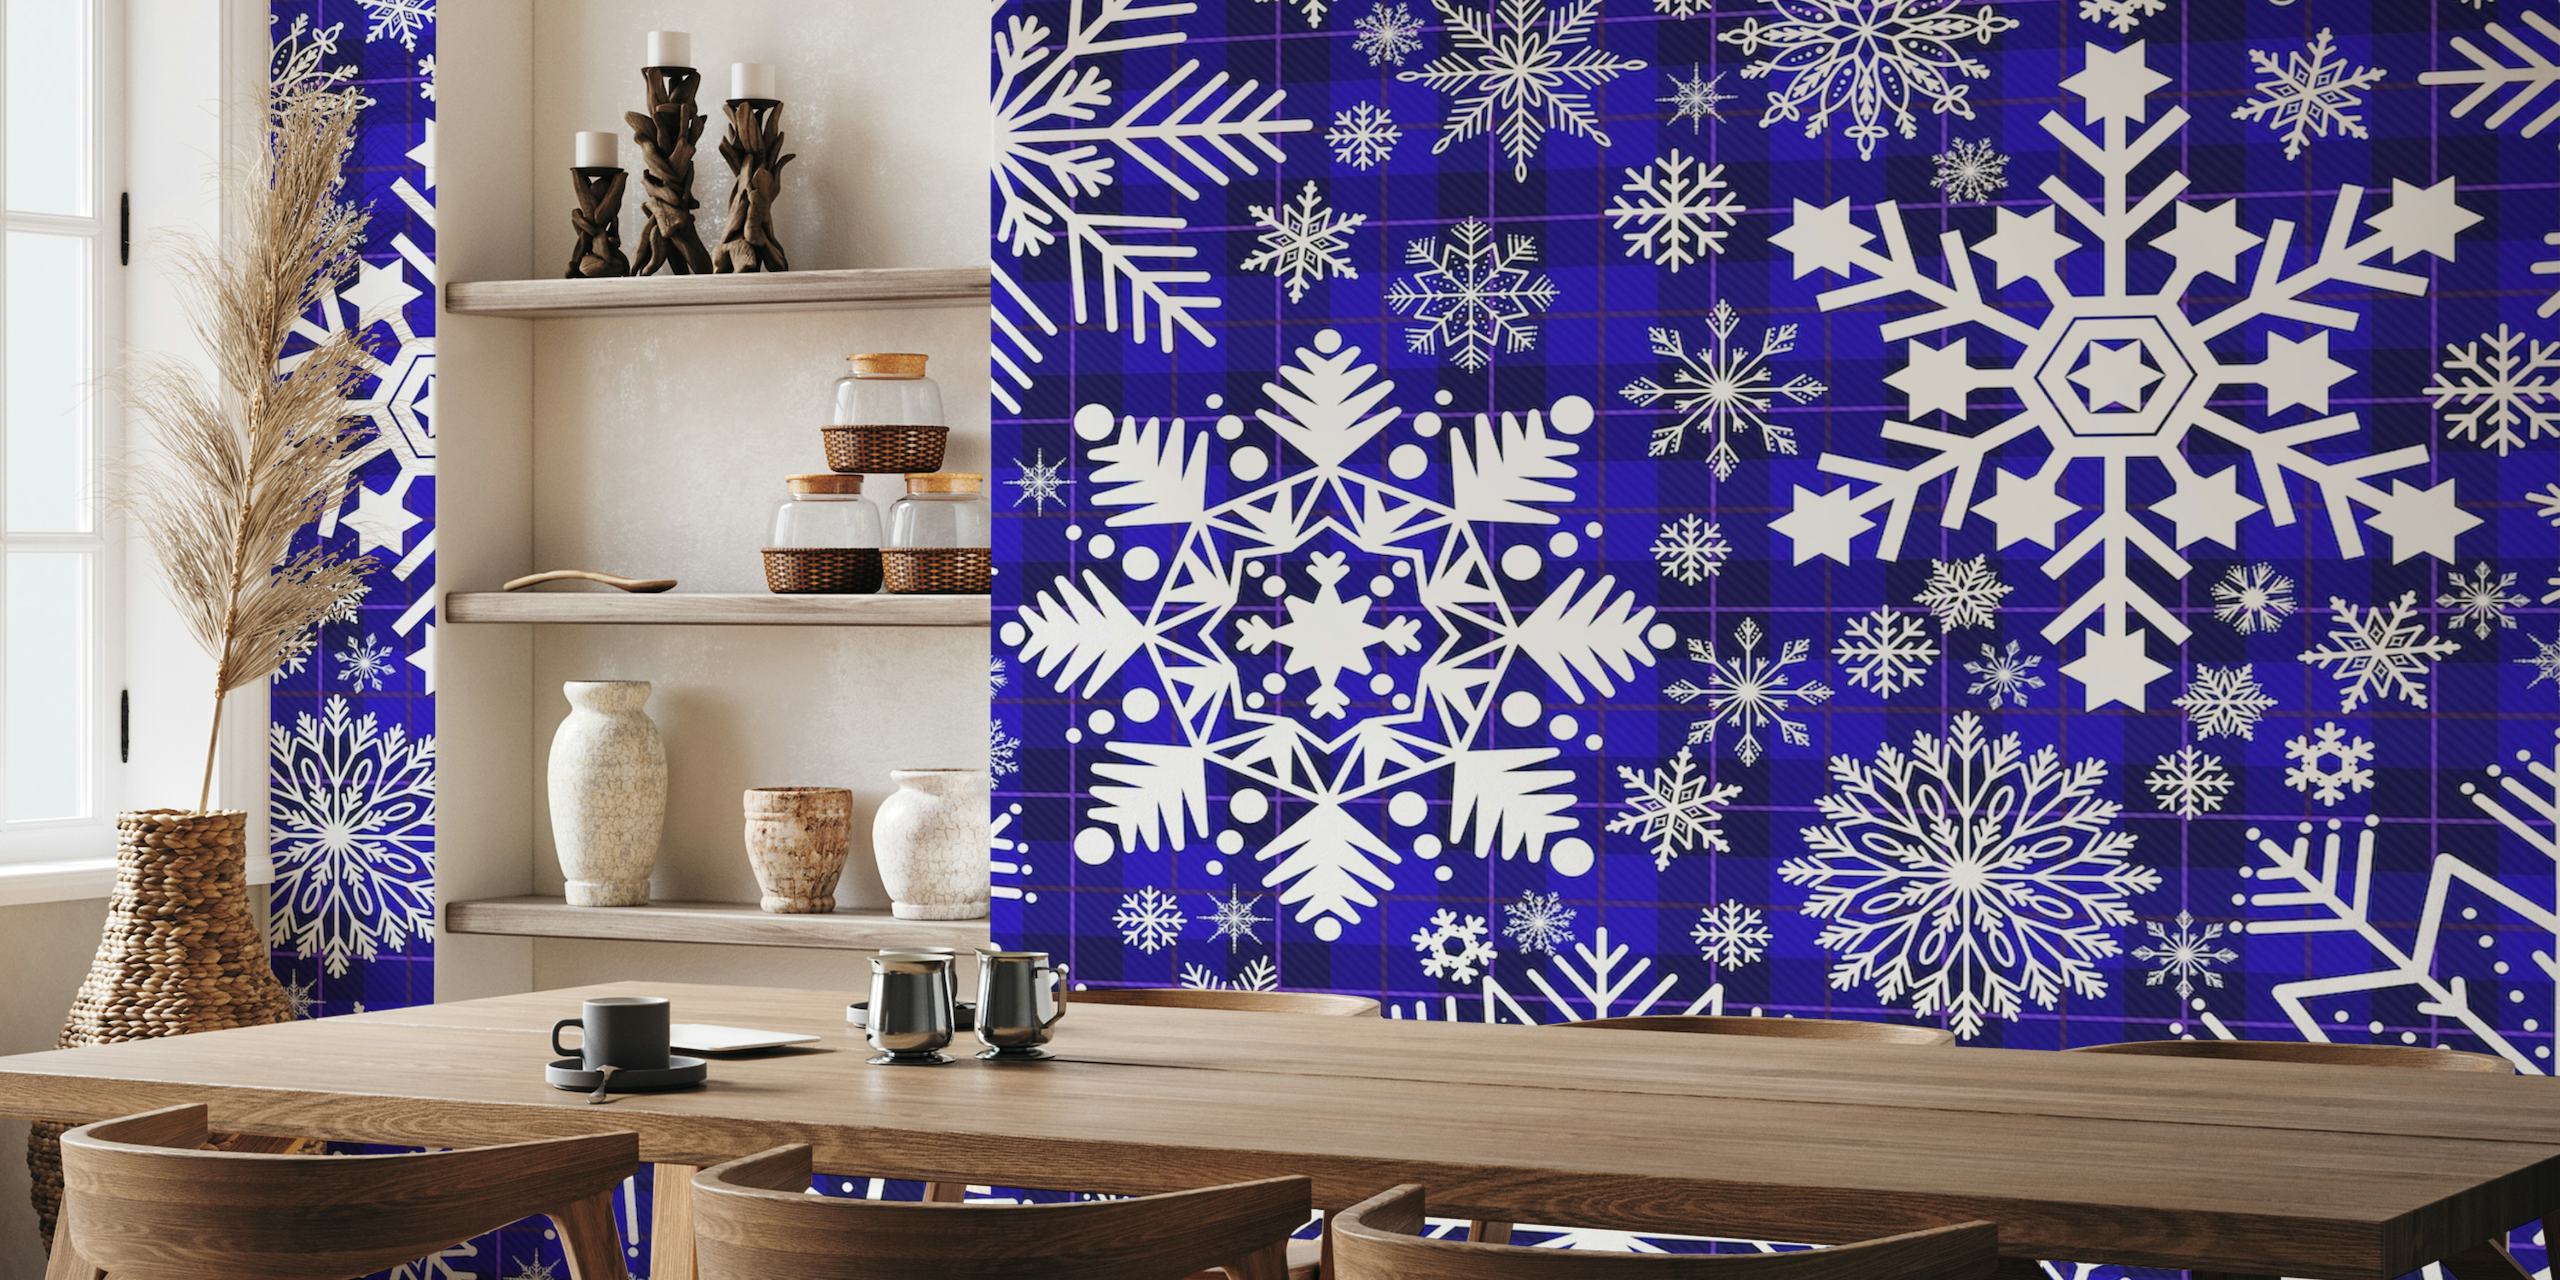 Ingewikkeld wit sneeuwvlokkenpatroon op een diepblauwe tartan muurschildering als achtergrond